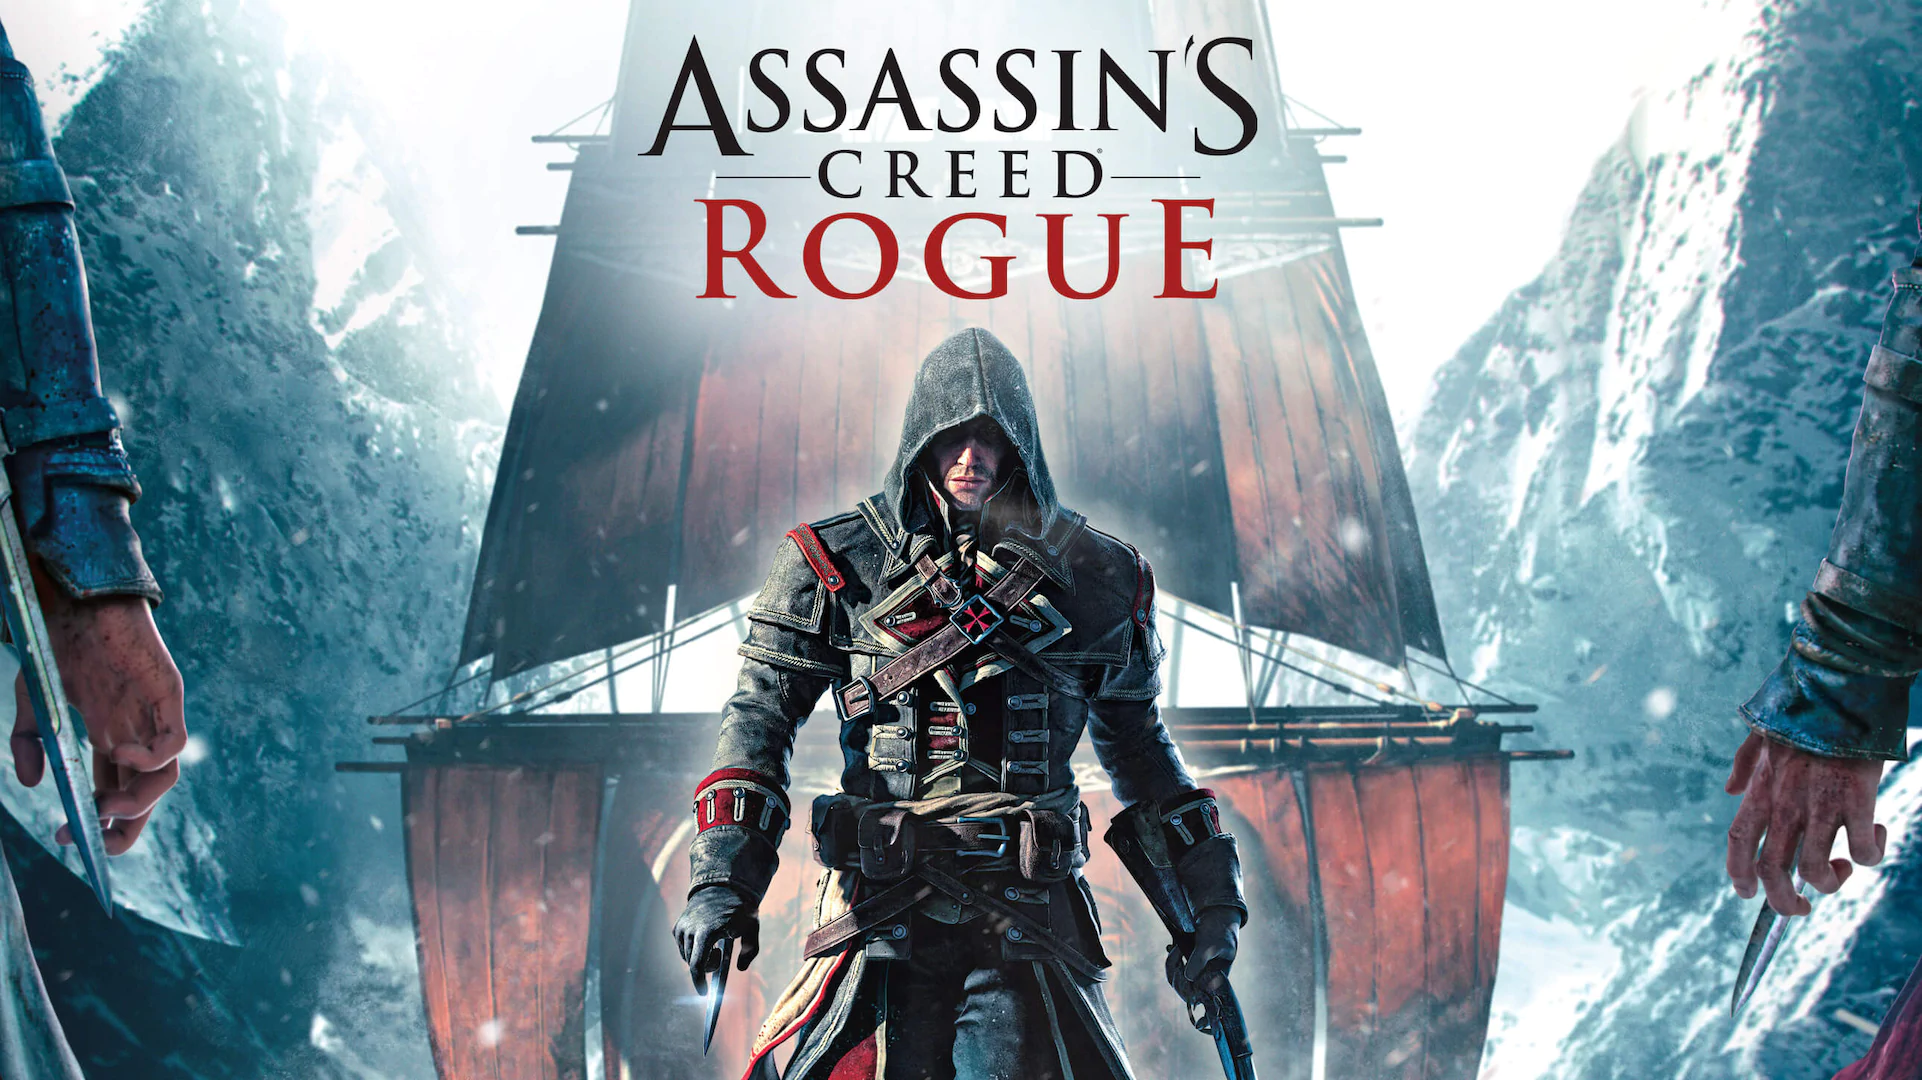 دانلود نسخه فشرده بازی Assassin's Creed Rogue با حجم 5.4 گیگابایت